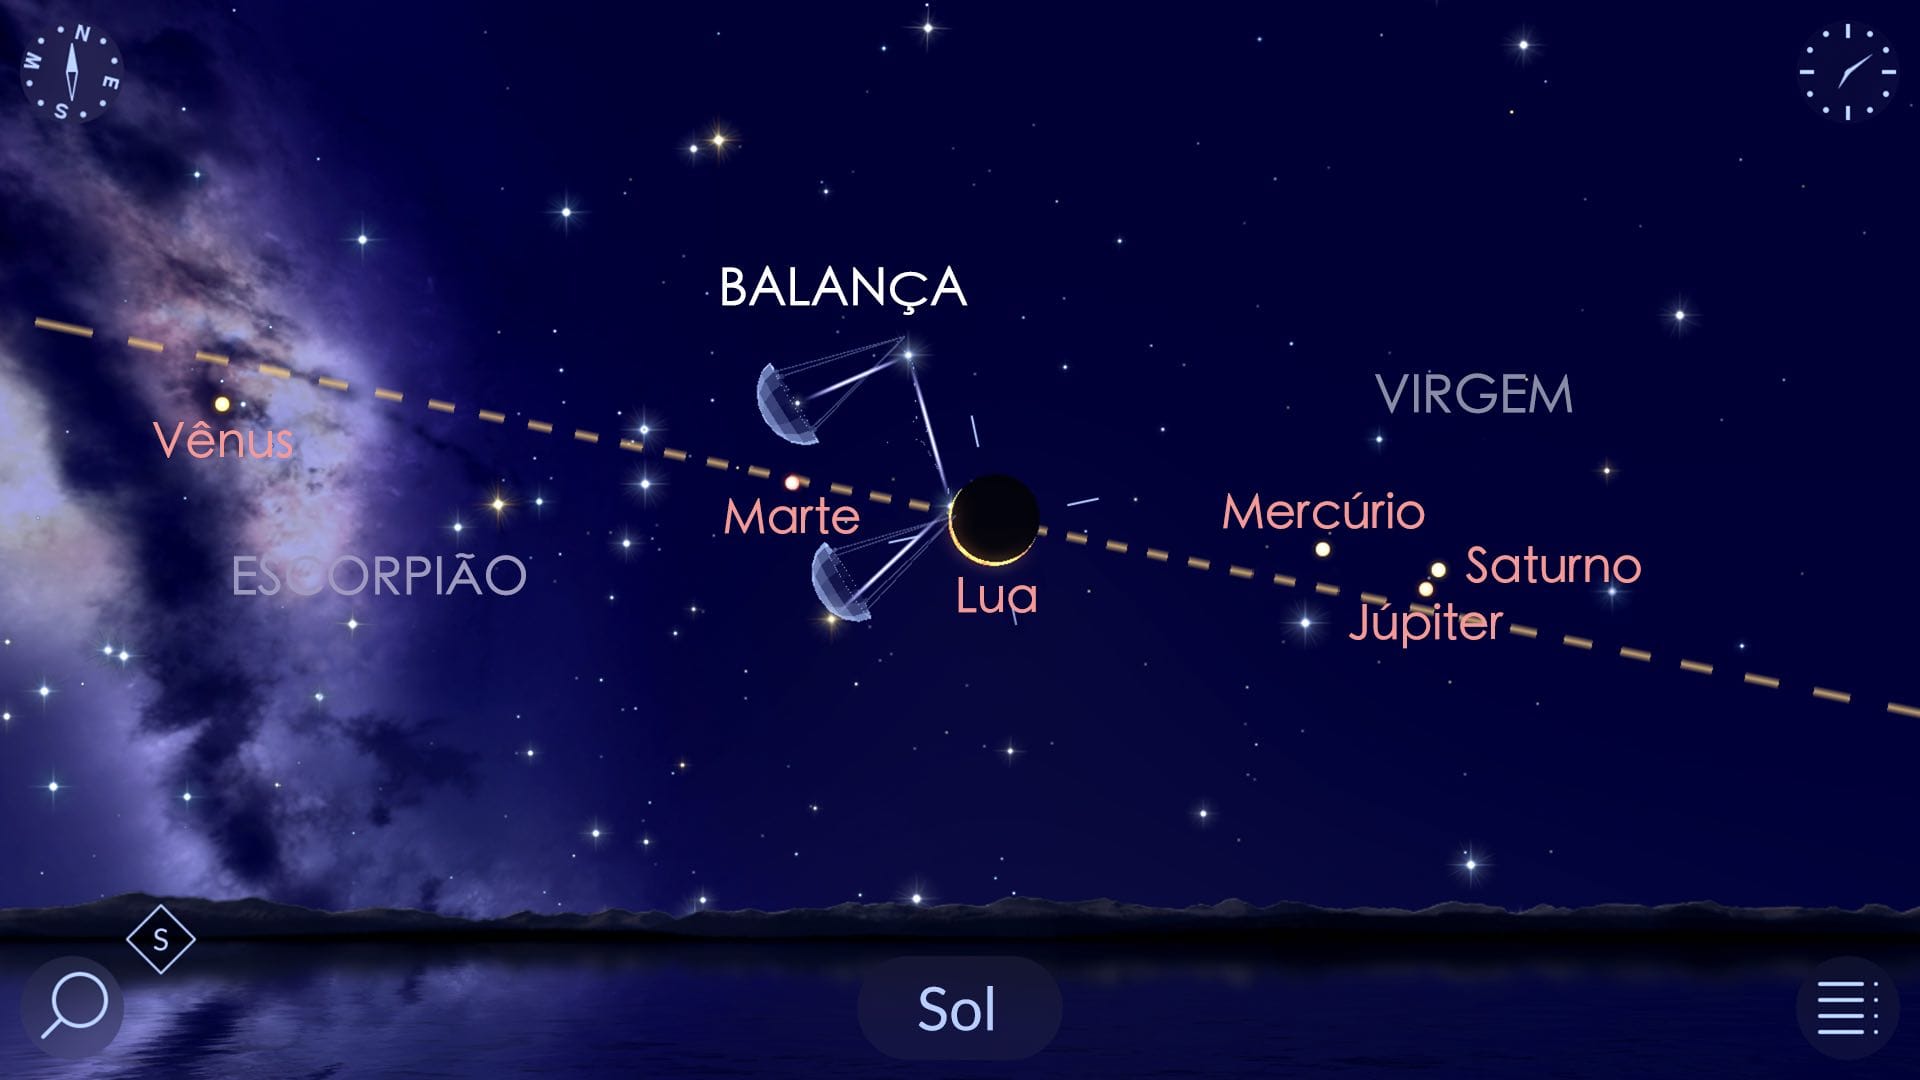 O eclipse solar e o alinhamento planetário em 4 de novembro de 2040, no Star Walk 2